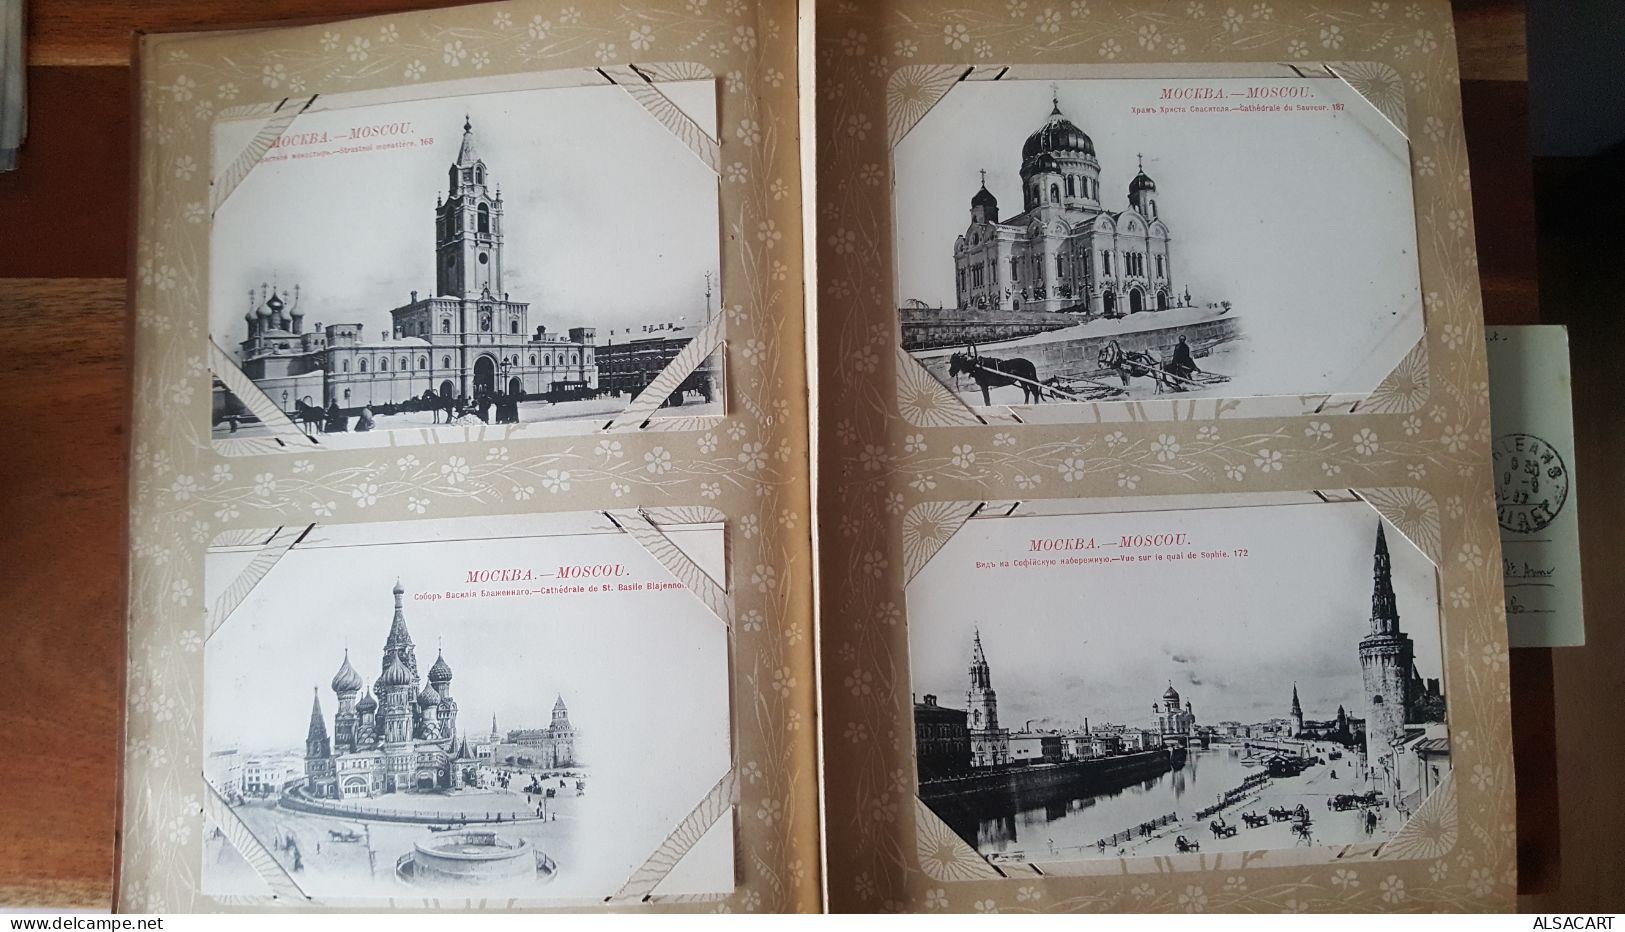 tres bel album de famille de russie , couverture style art nouveau ,  environs cent cartes